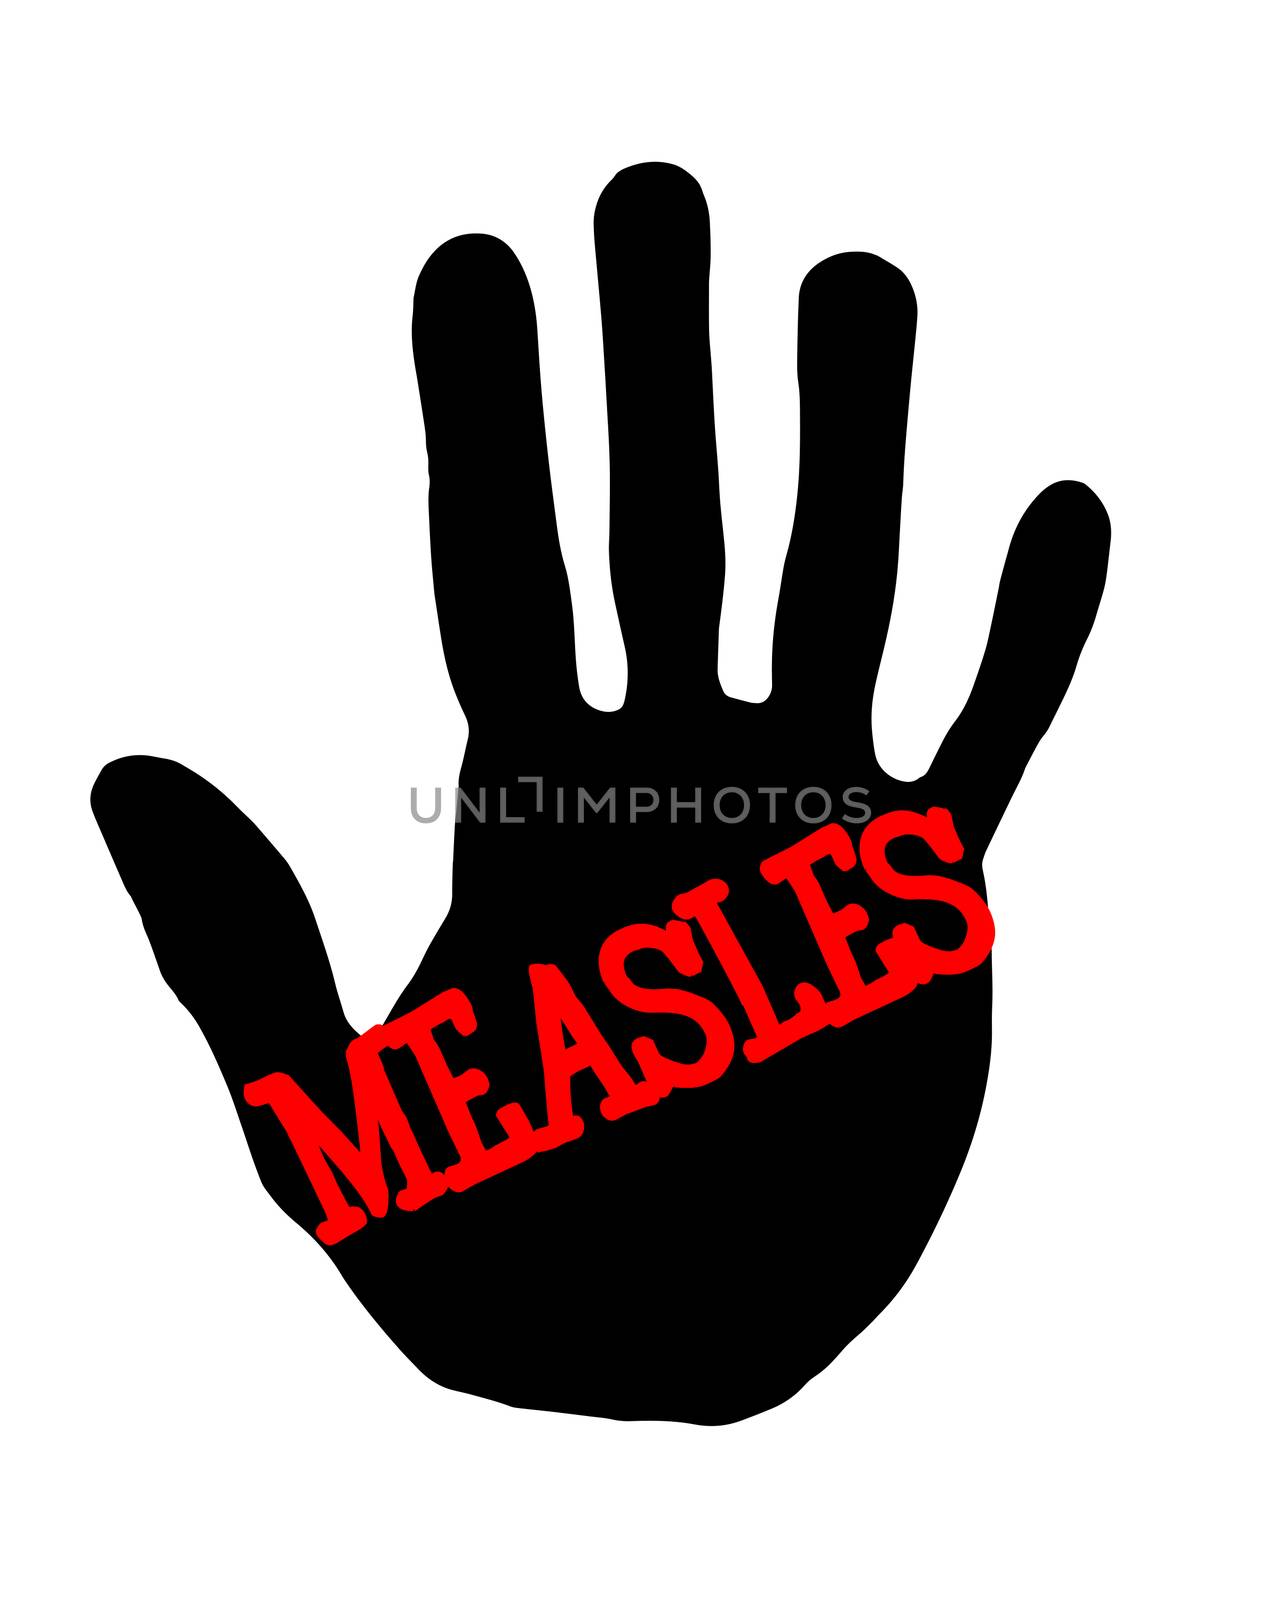 Handprint measles by Milovan